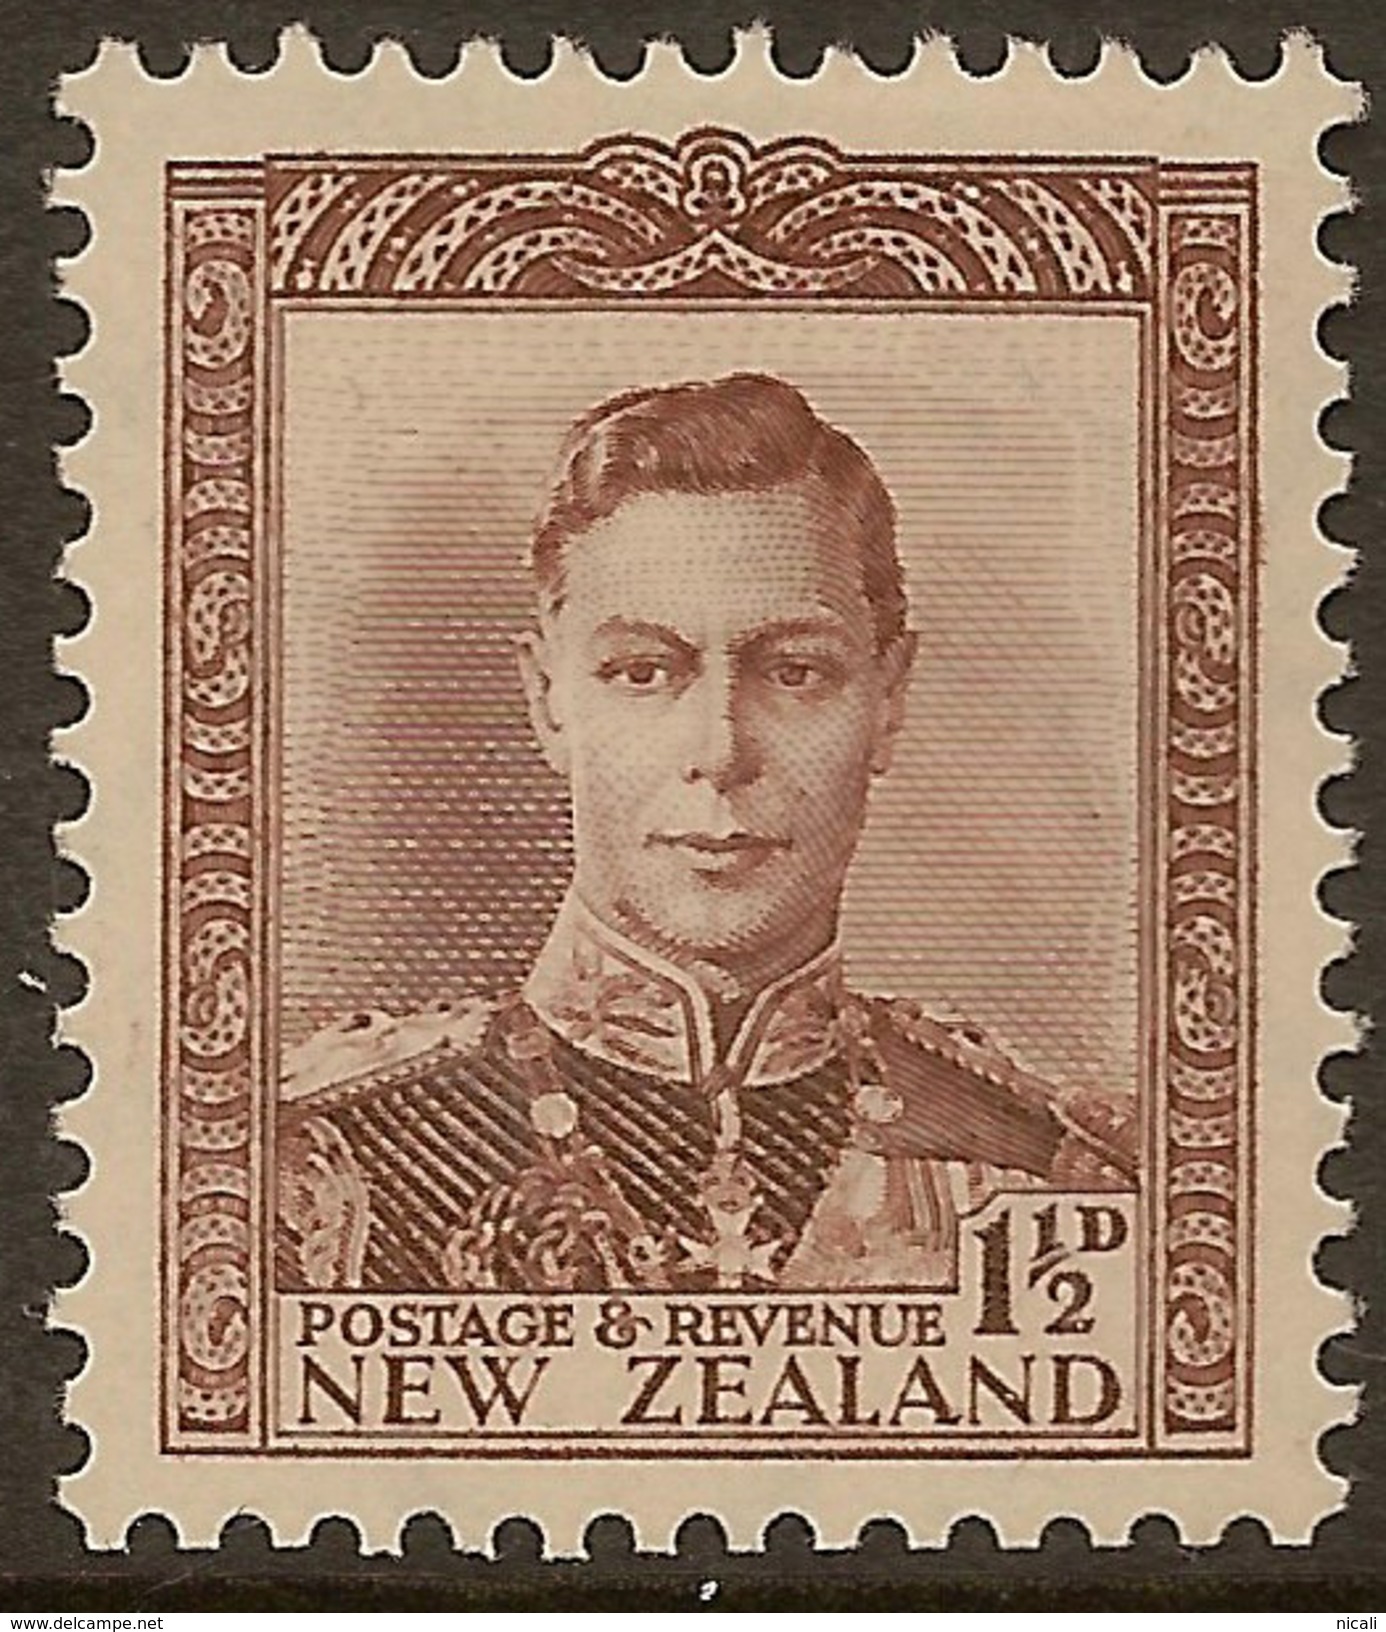 NZ 1938 1 1/2d Wmk Inv KGVI SG 607w HM #ADI253 - Ongebruikt